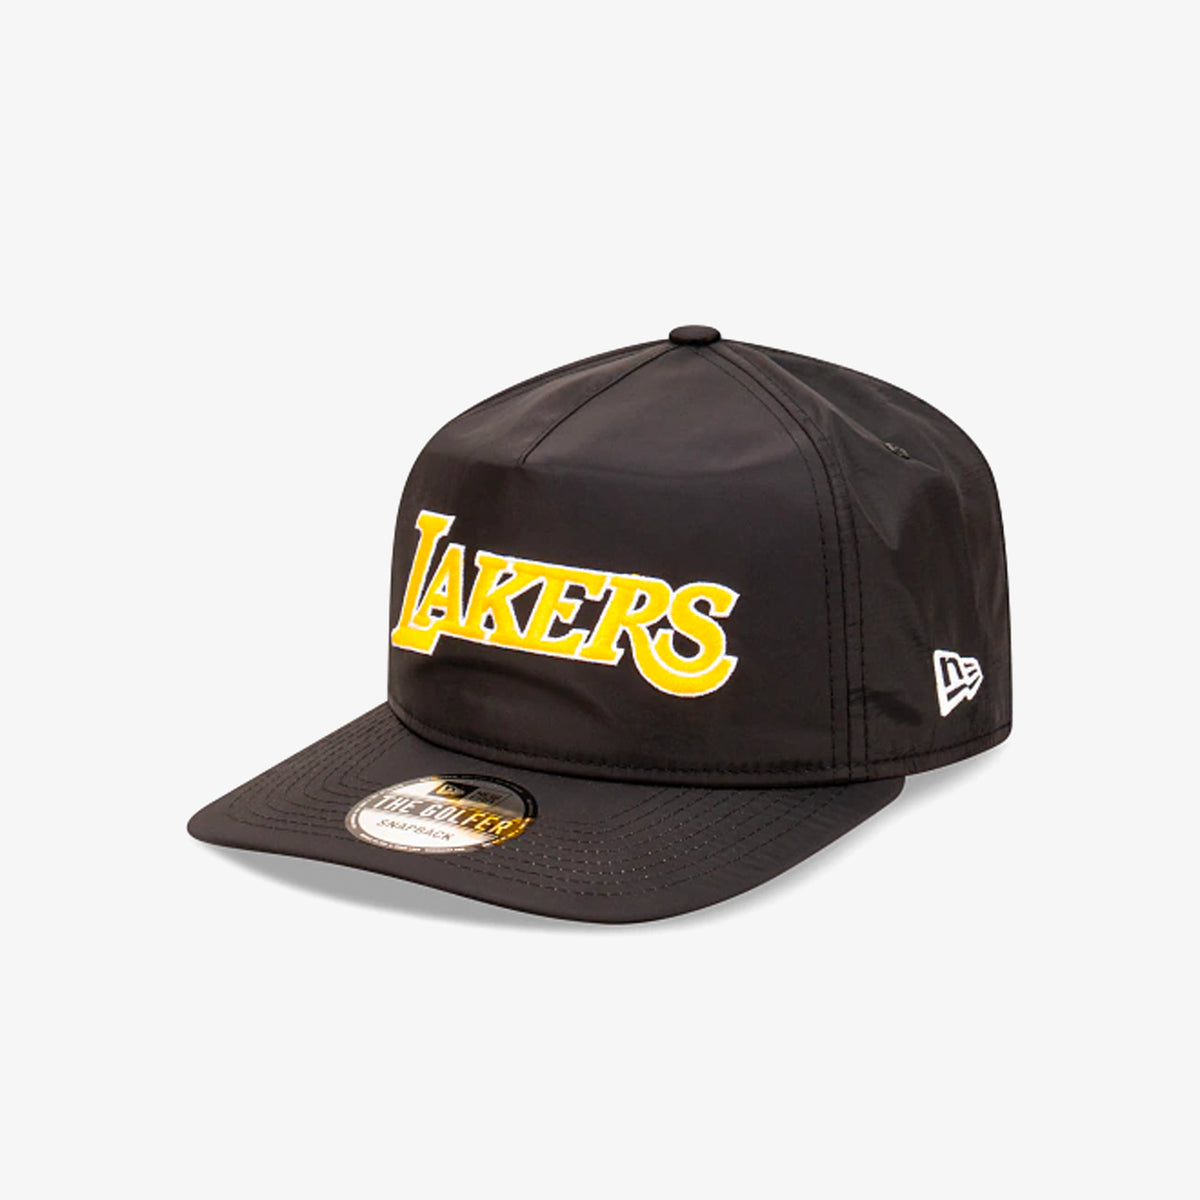 Los Angeles Lakers Wordmark The Golfer Snapback - Black